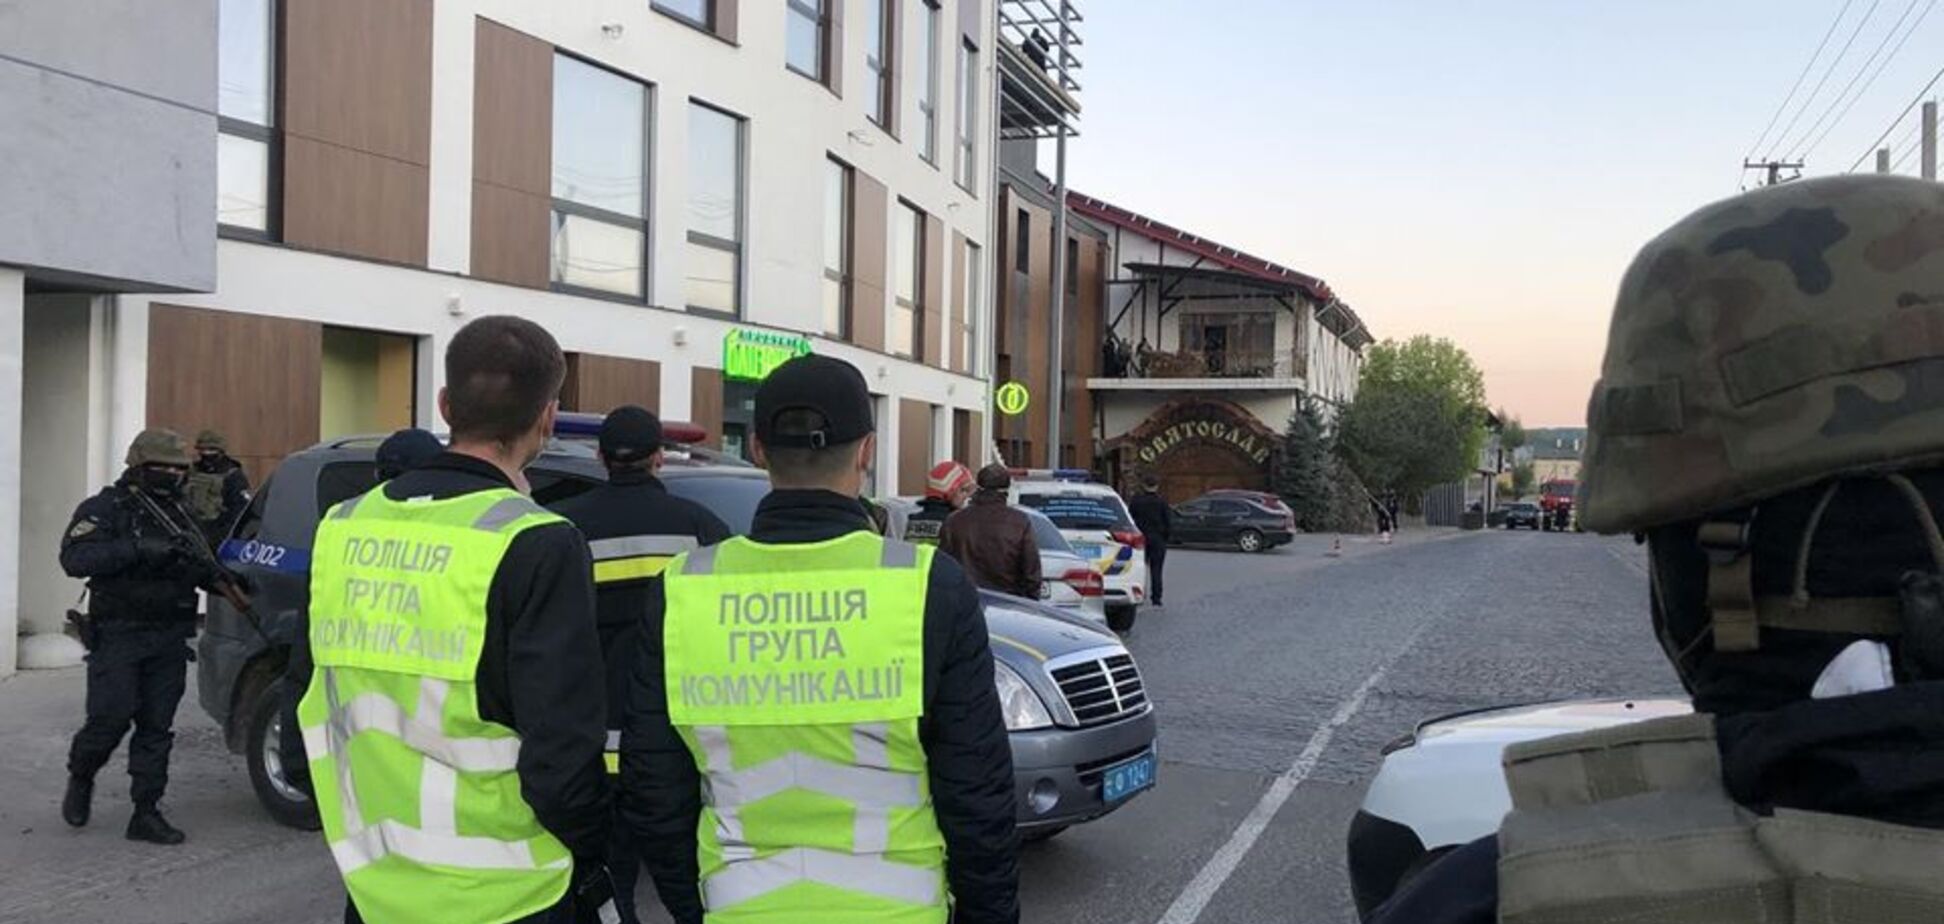 На Львовщине мужчина захватил ресторан и грозил взрывом, полиция задержала его: фото с места событий